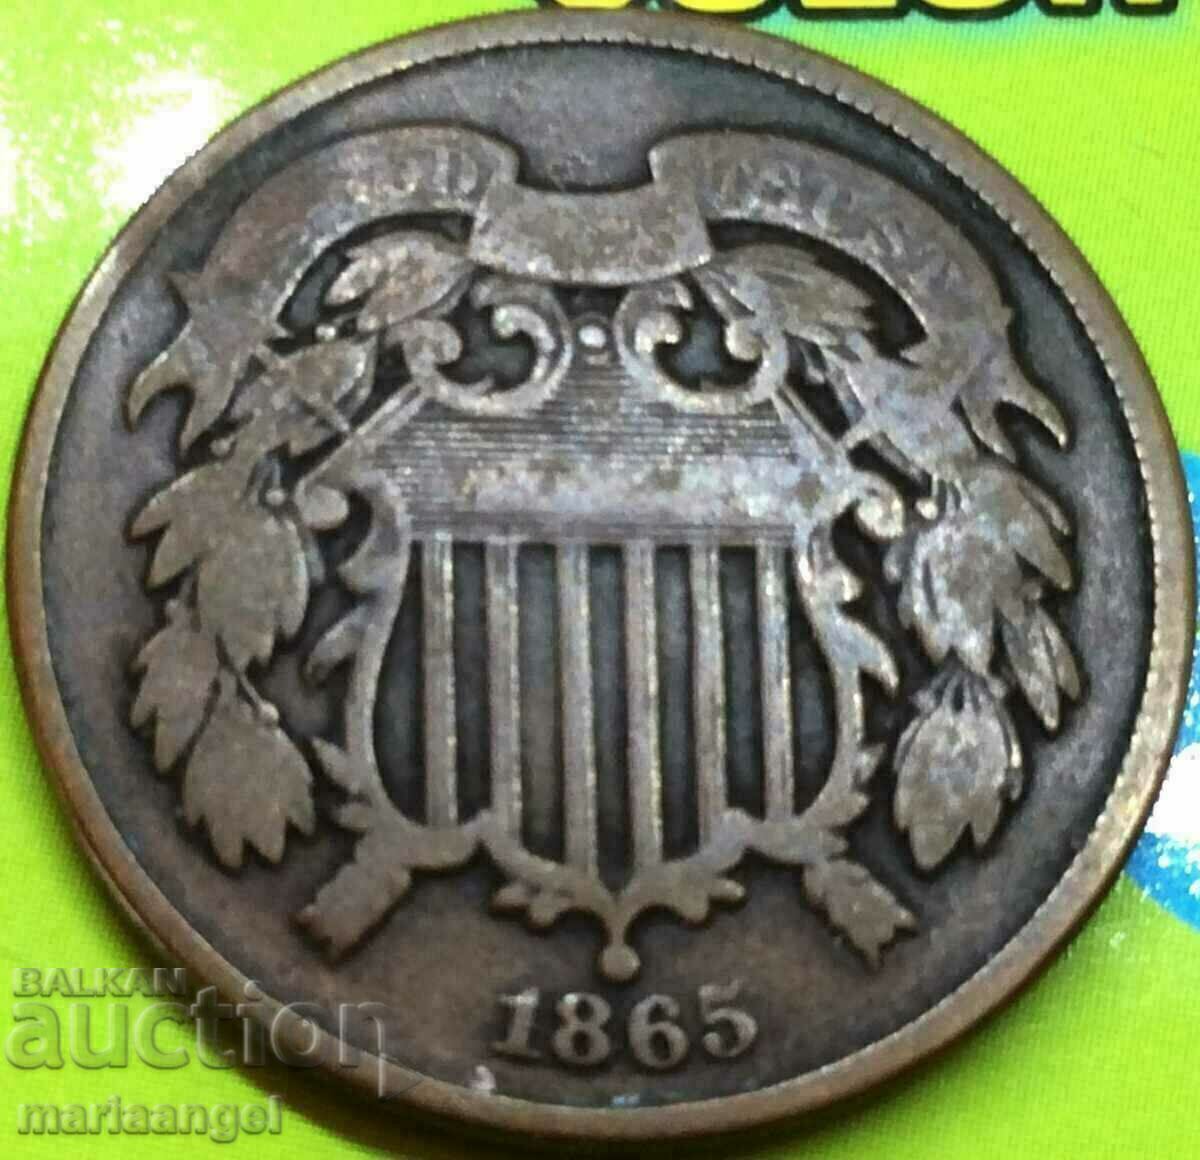 US 2 cent 1862 - quite rare